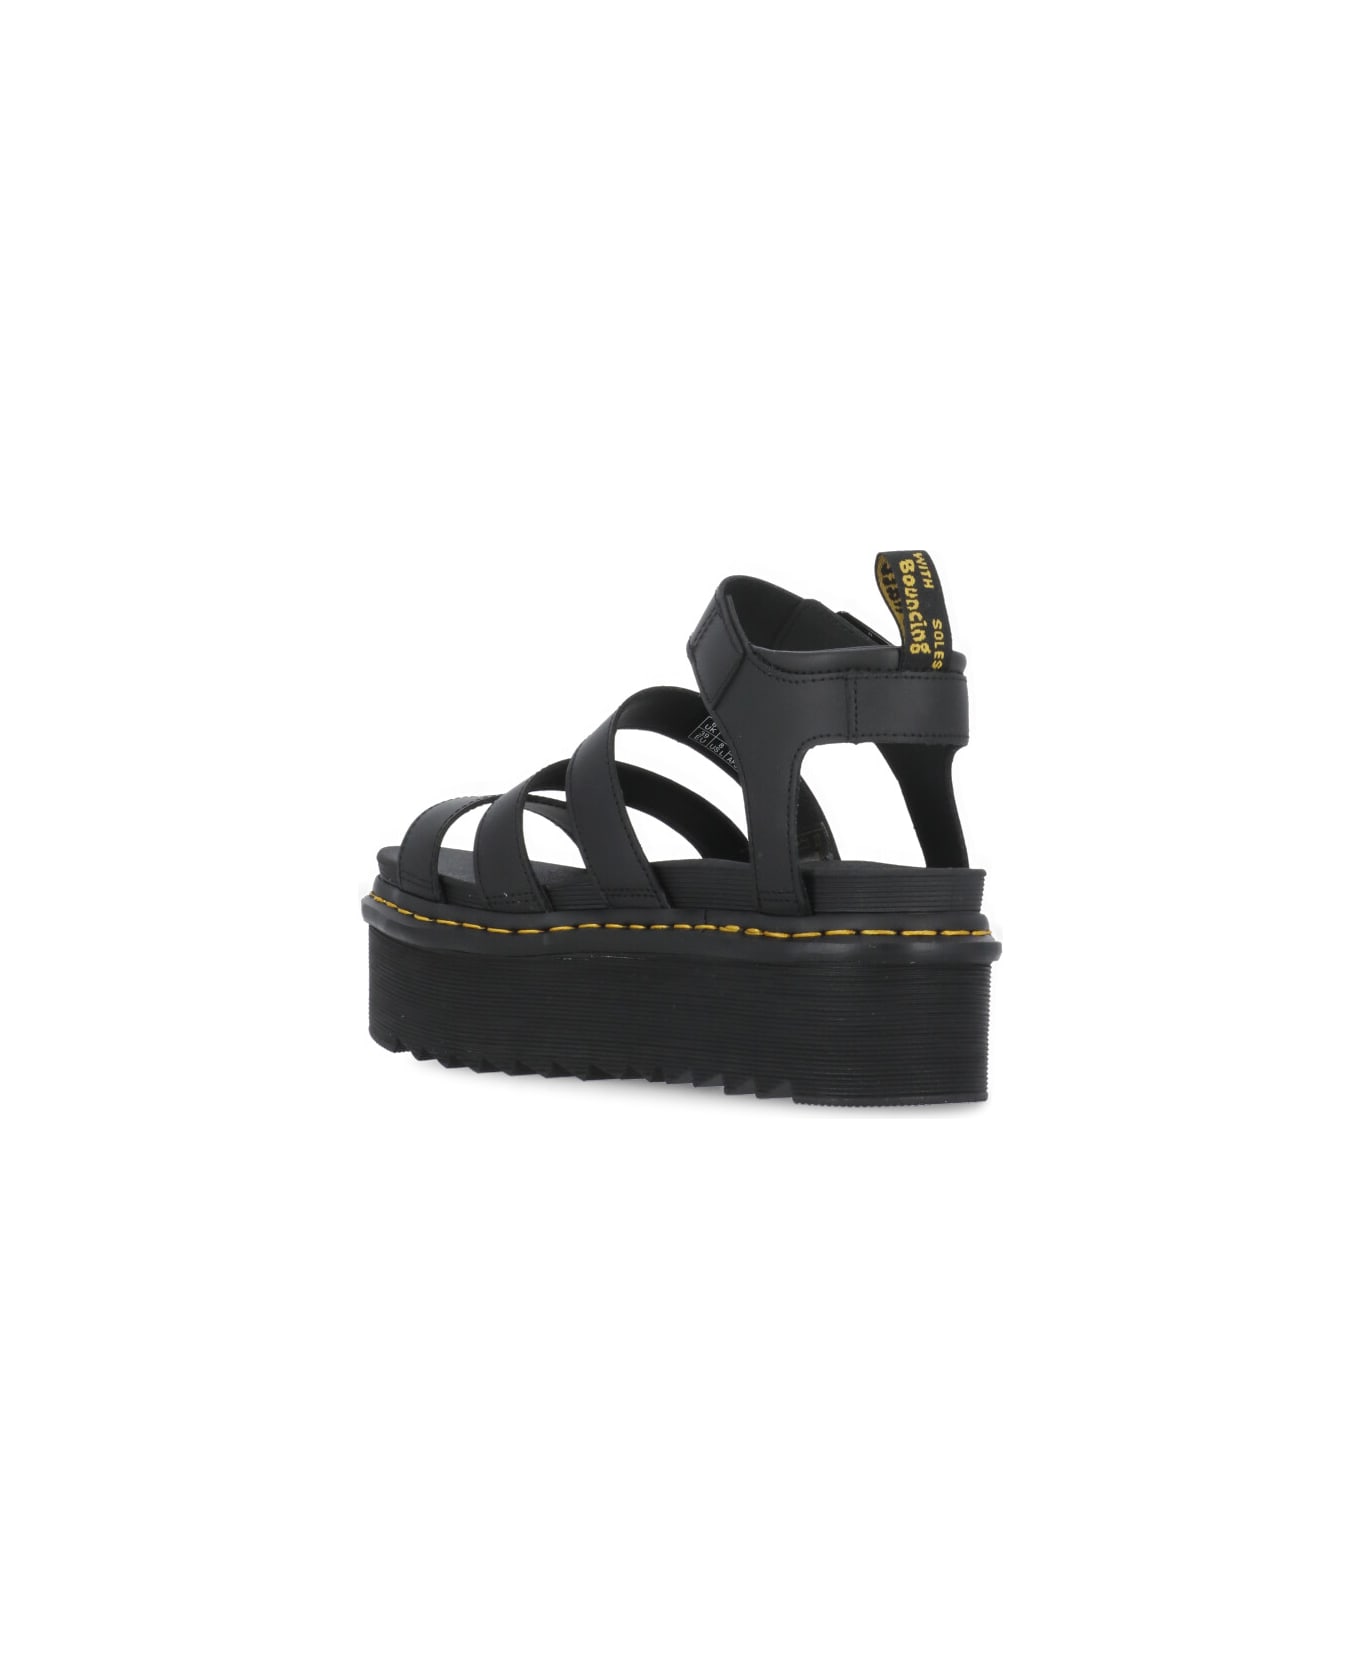 Dr. Martens Blaire Quad Hydro Sandals - Black